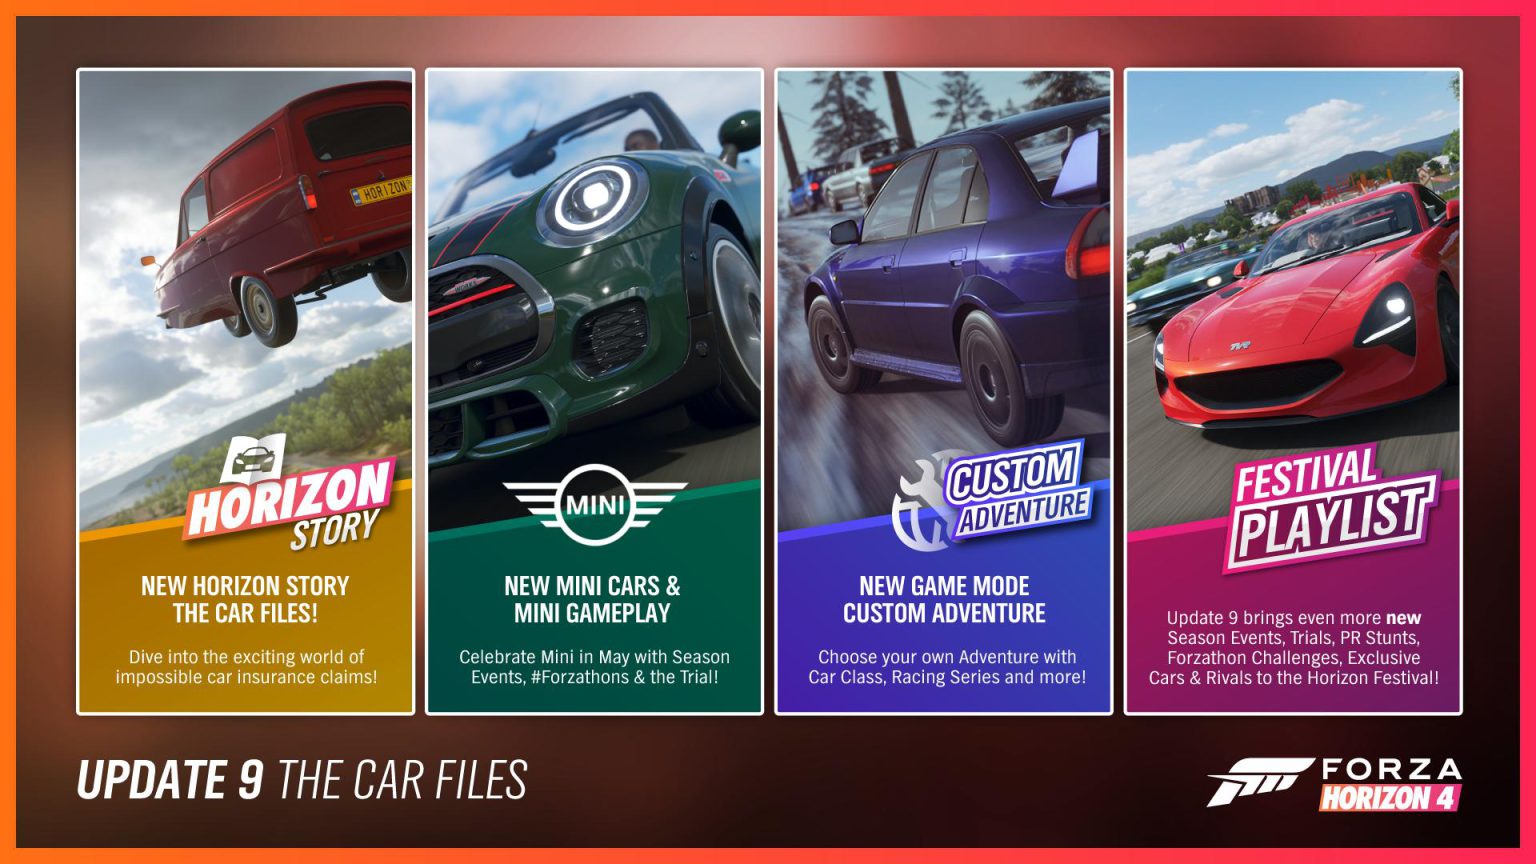 Forza Horizon 4 update 9